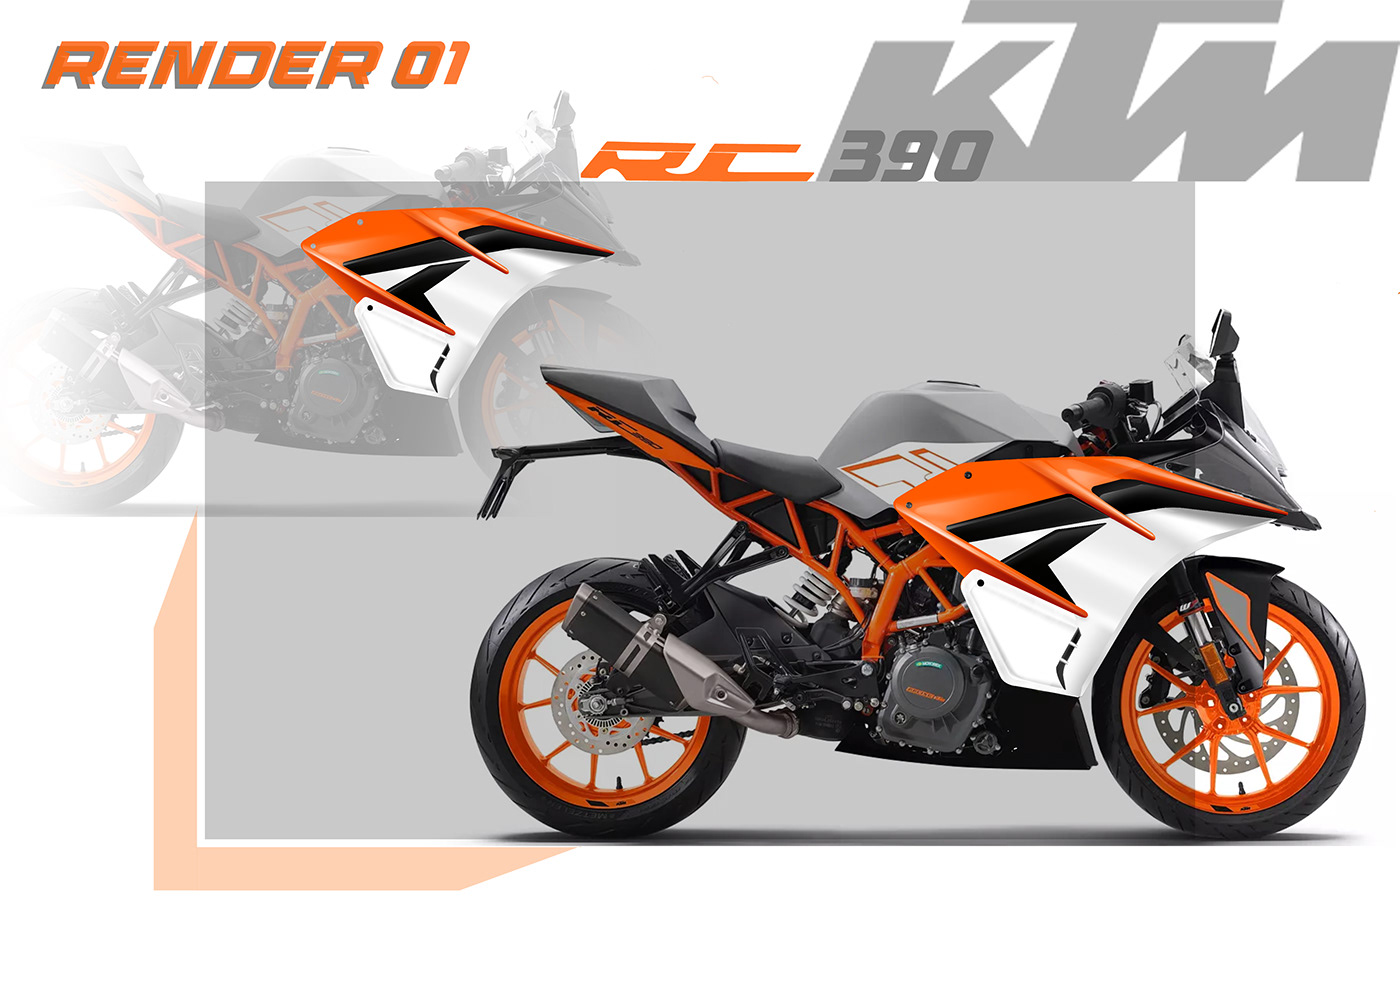 KTM KTM RC 390 facelift motorcycle design automobile design car automotive   concept